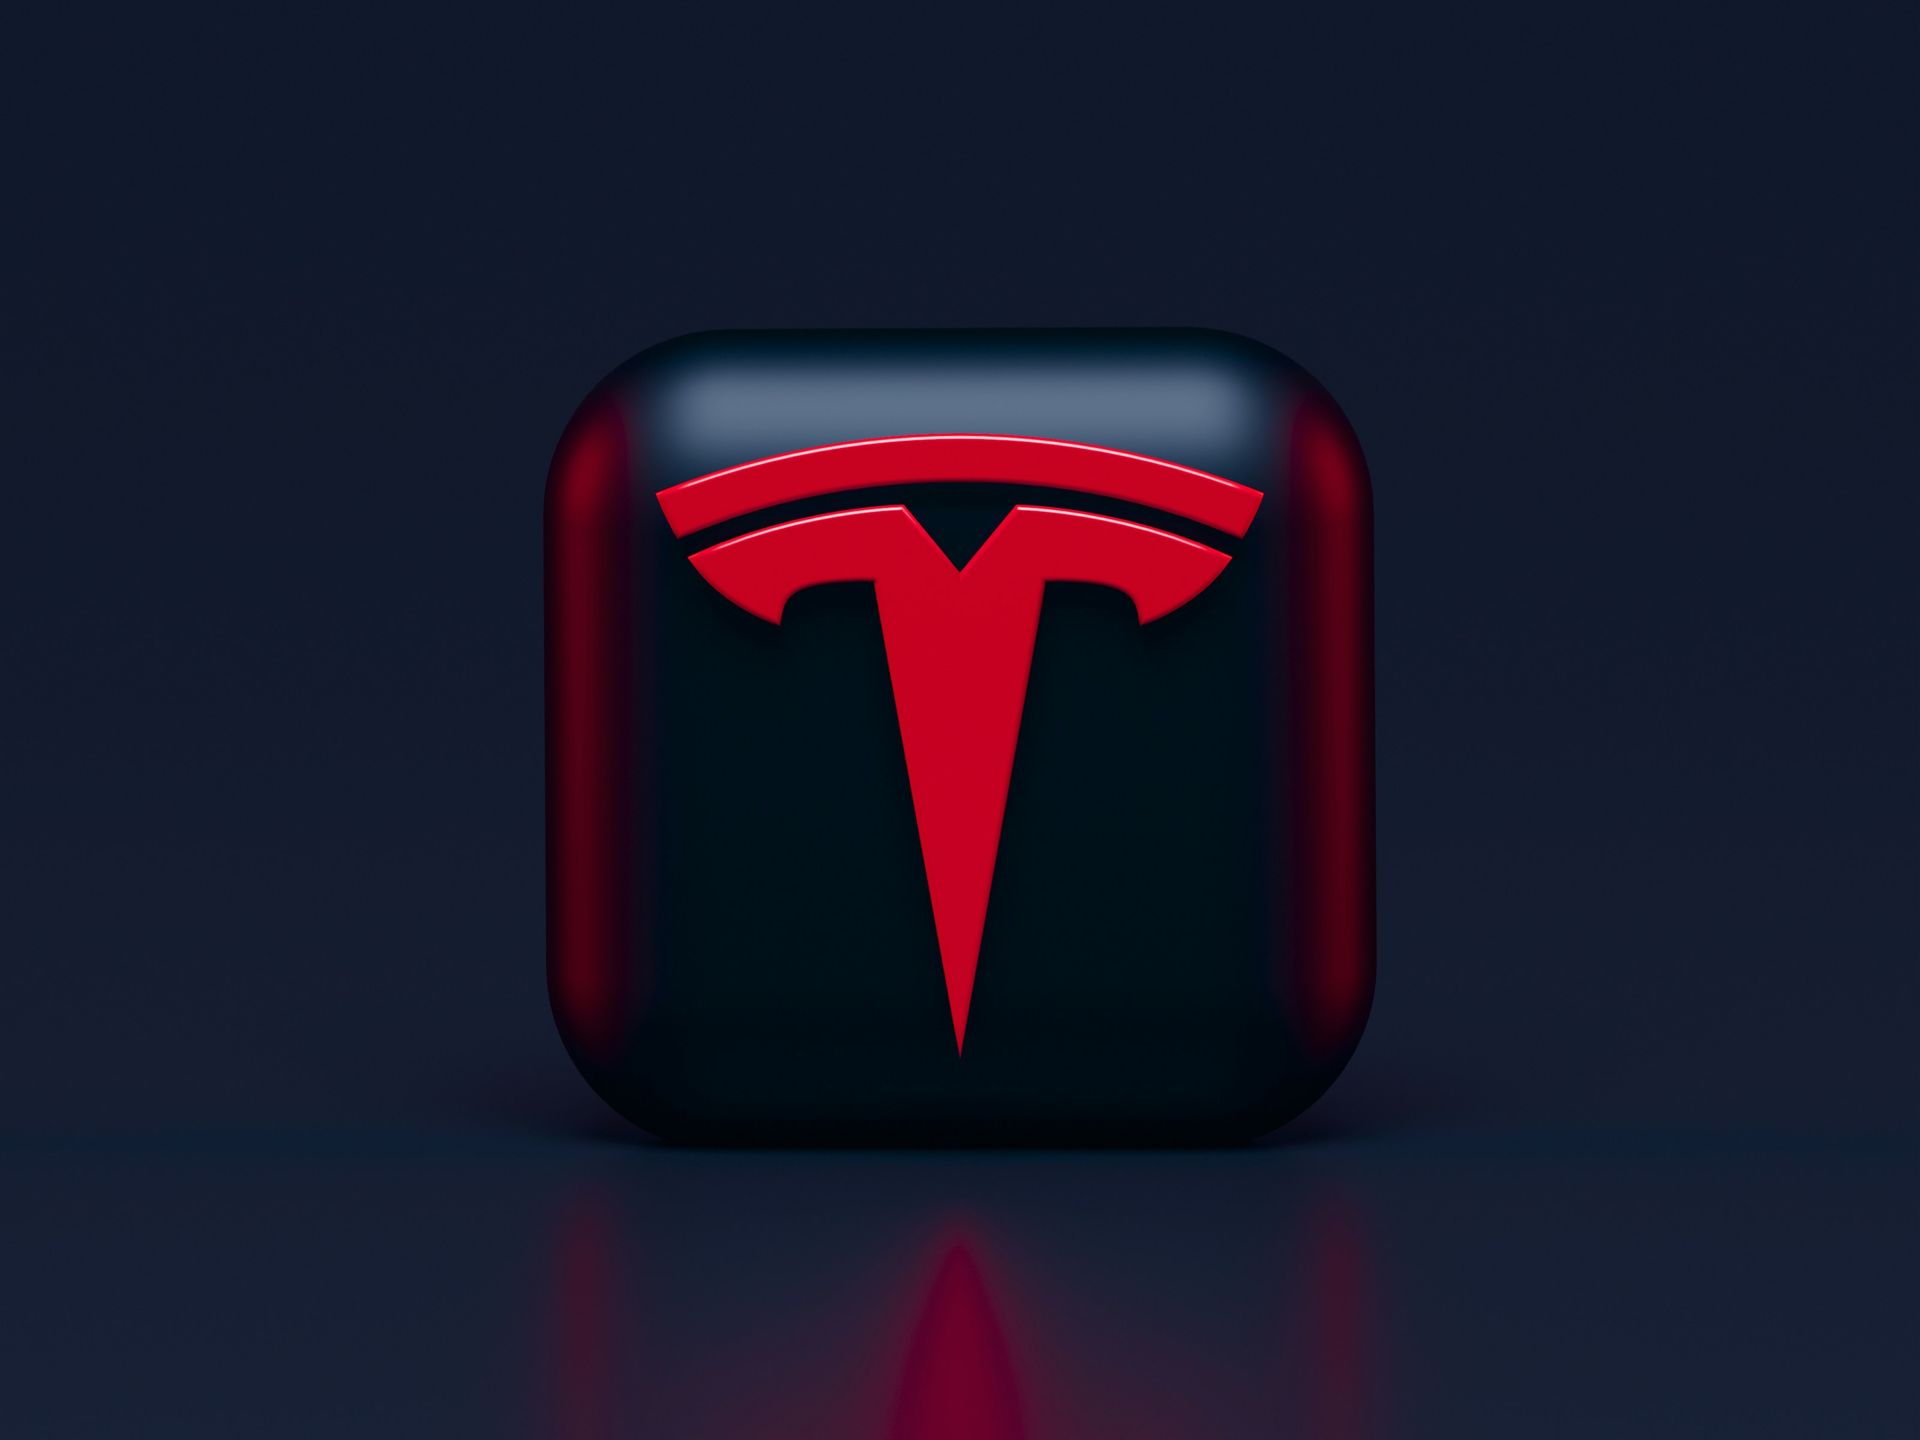 Tesla op de agenda met nieuws over massale ontslagen